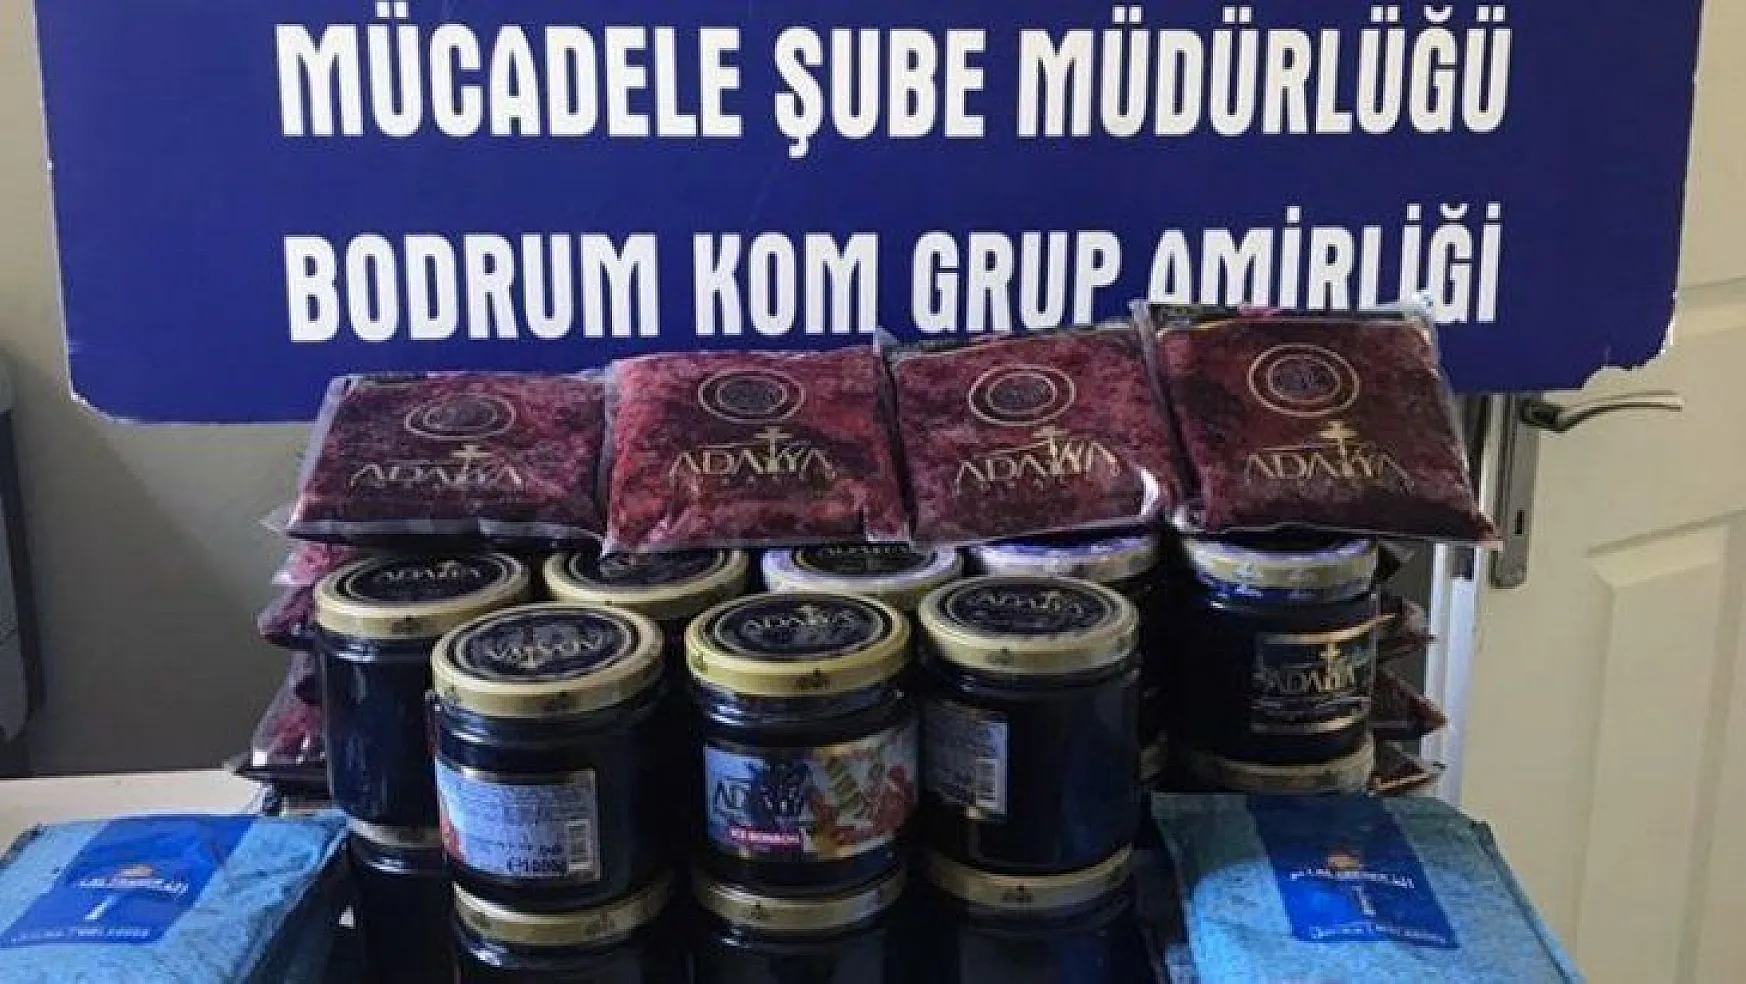 Bodrum'da gümrük kaçağı cinsel içerikli ürün operasyonu